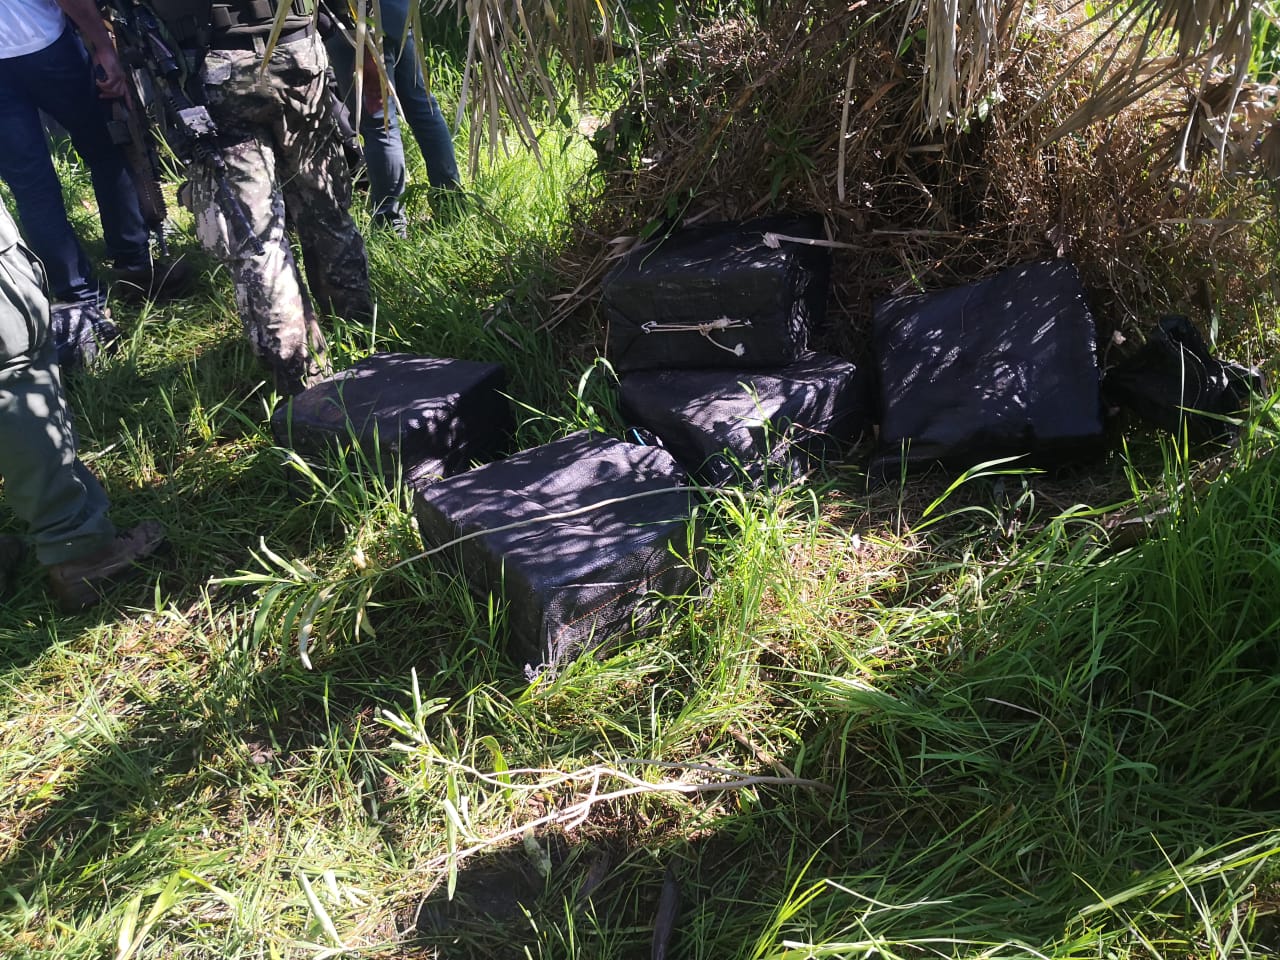 300 kg de Cocaína fueron incautados. Un presunto narco fue herido en la pierna. Fotos: Ministerio Público